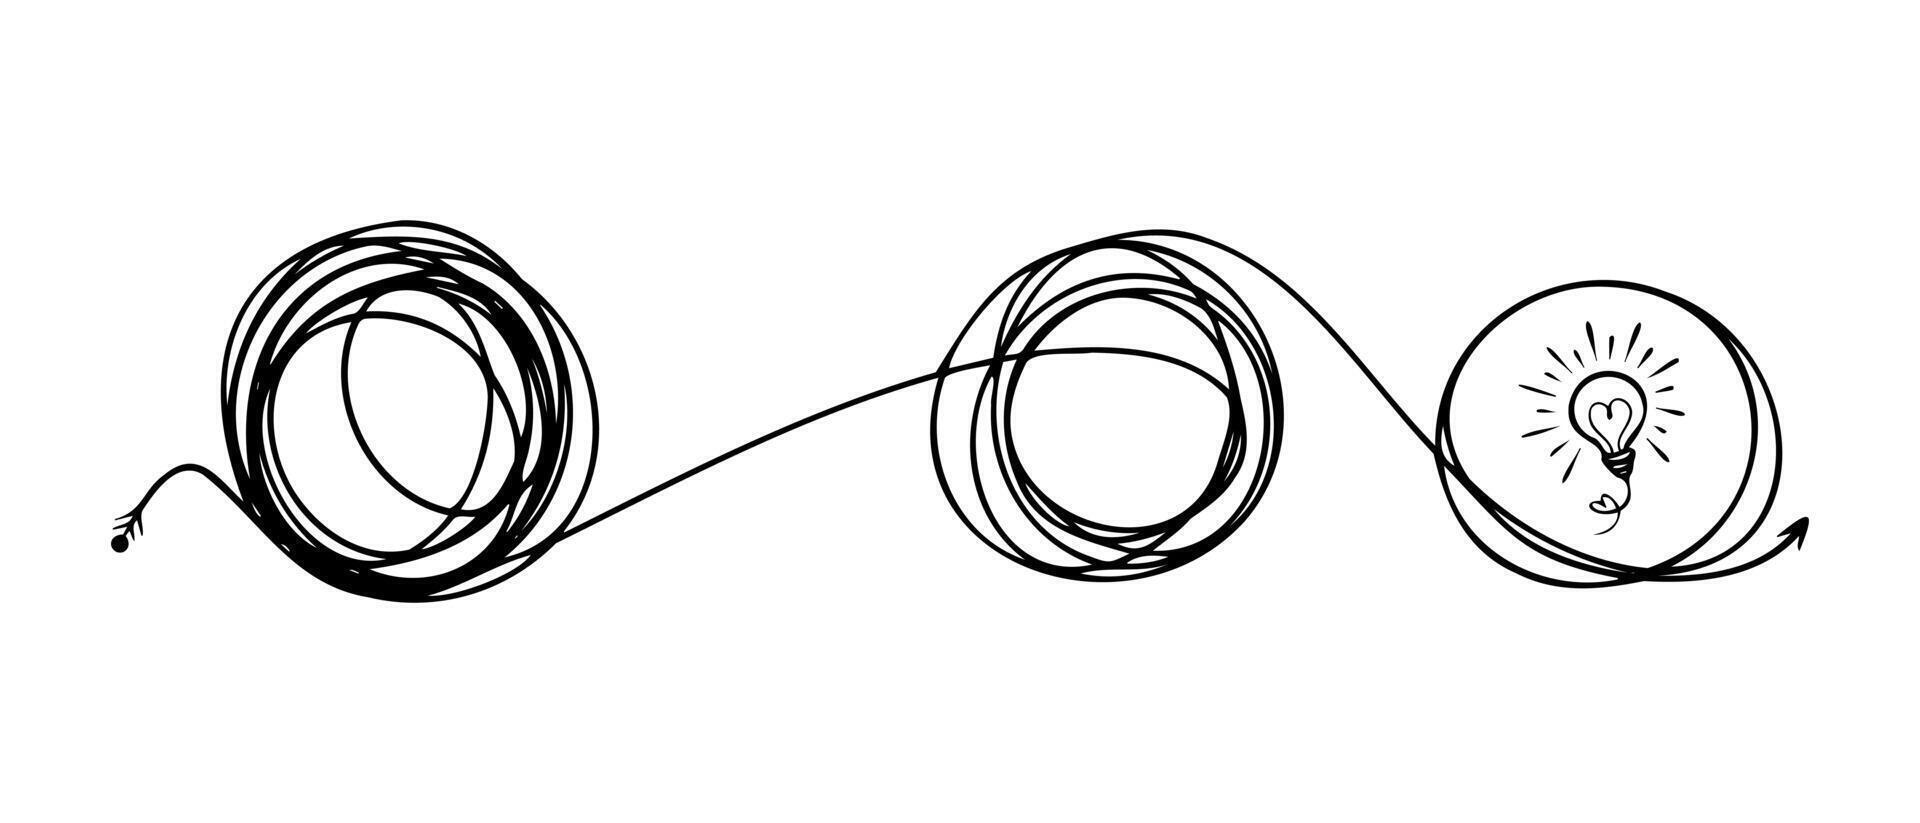 dessiné à la main d'un croquis de griffonnage enchevêtrement. gribouillis abstrait, illustration vectorielle. vecteur